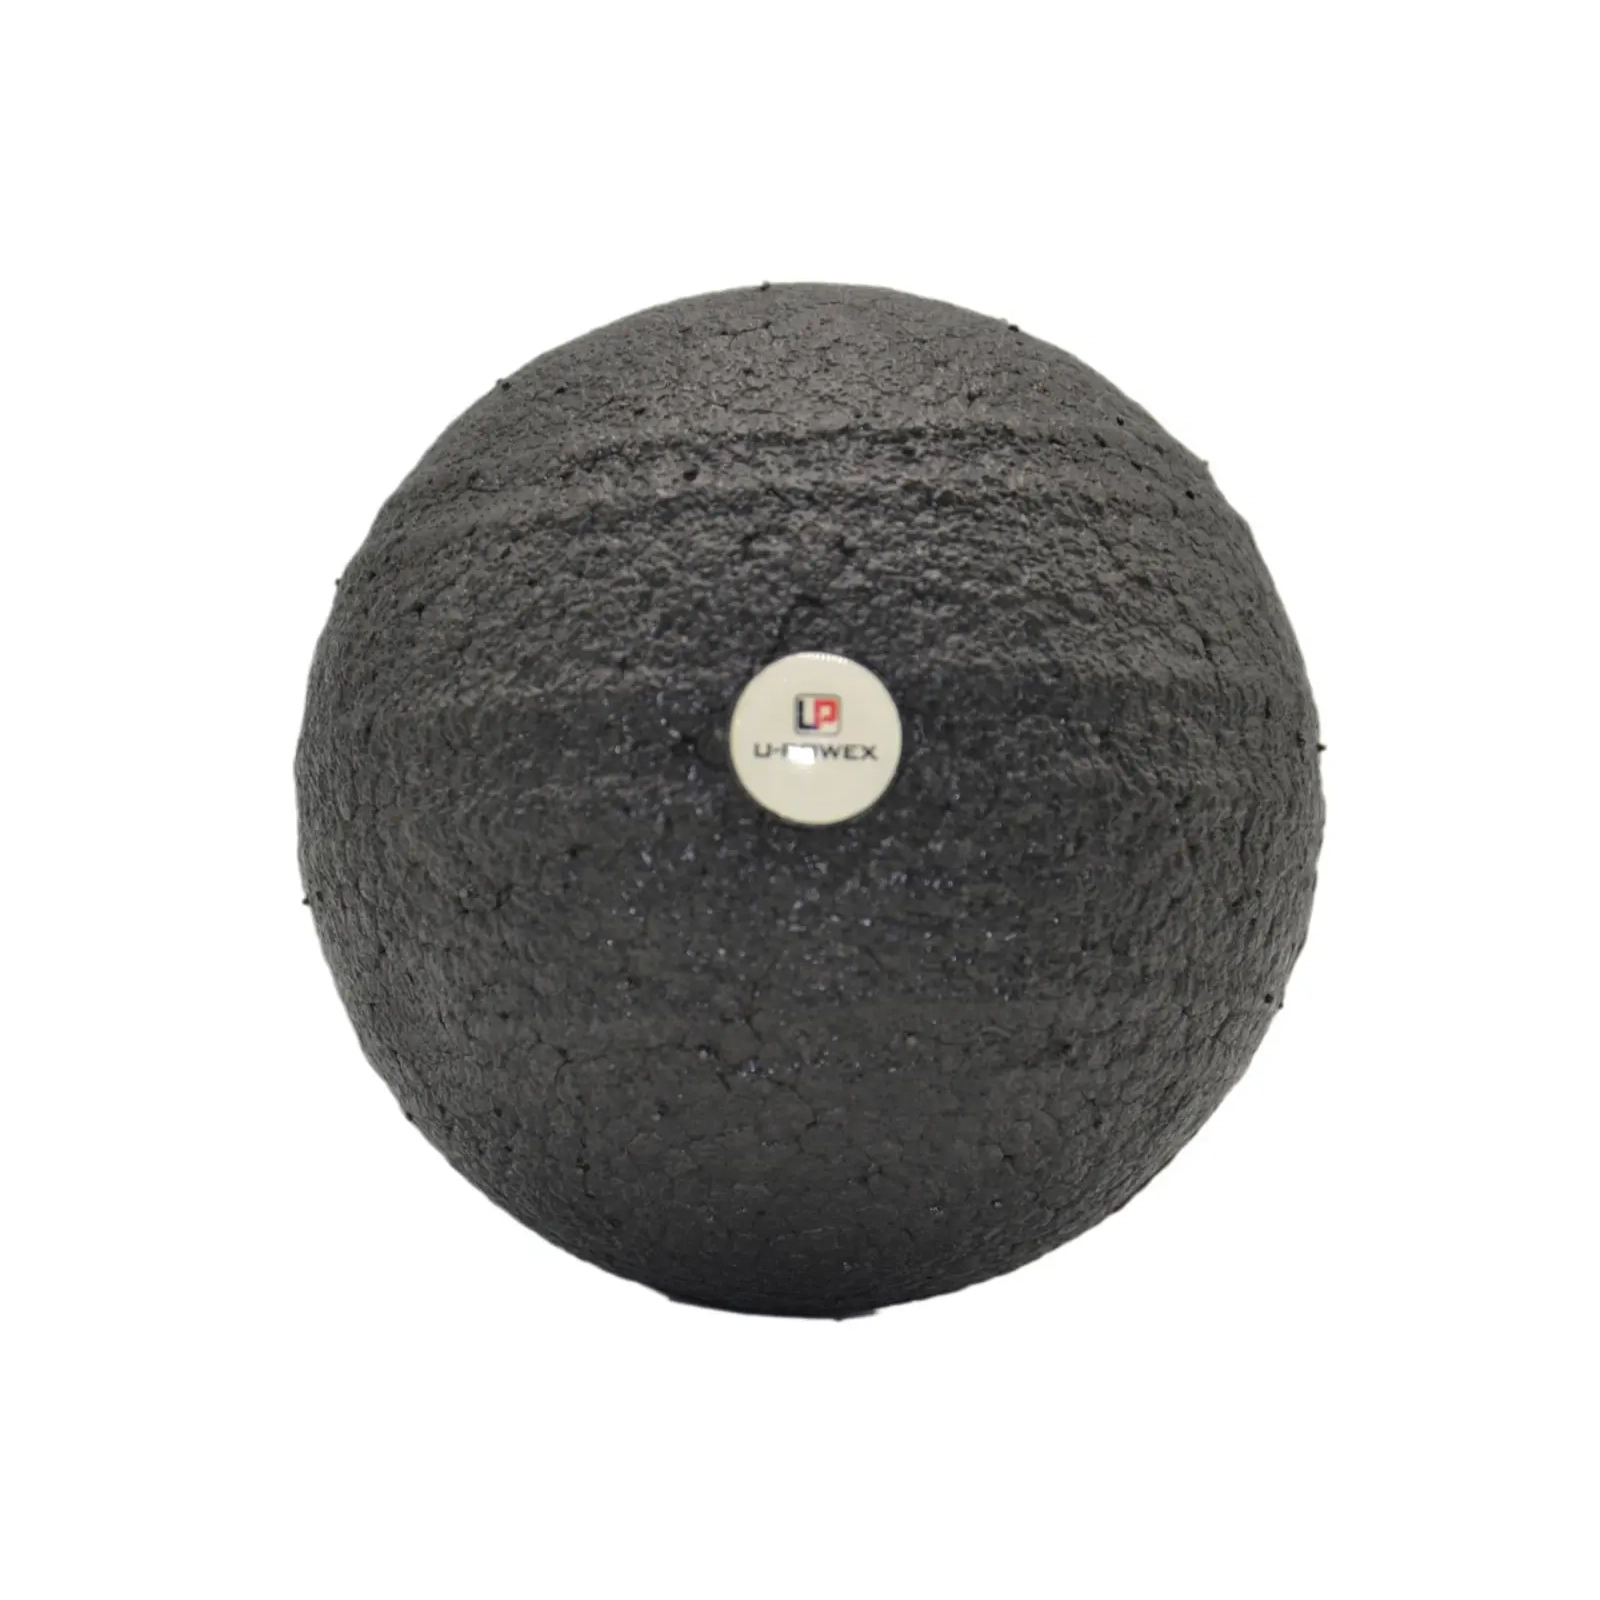 Массажный мяч U-Powex Epp foam ball d10 Black (UP_1003_Ball_D10cm) изображение 2